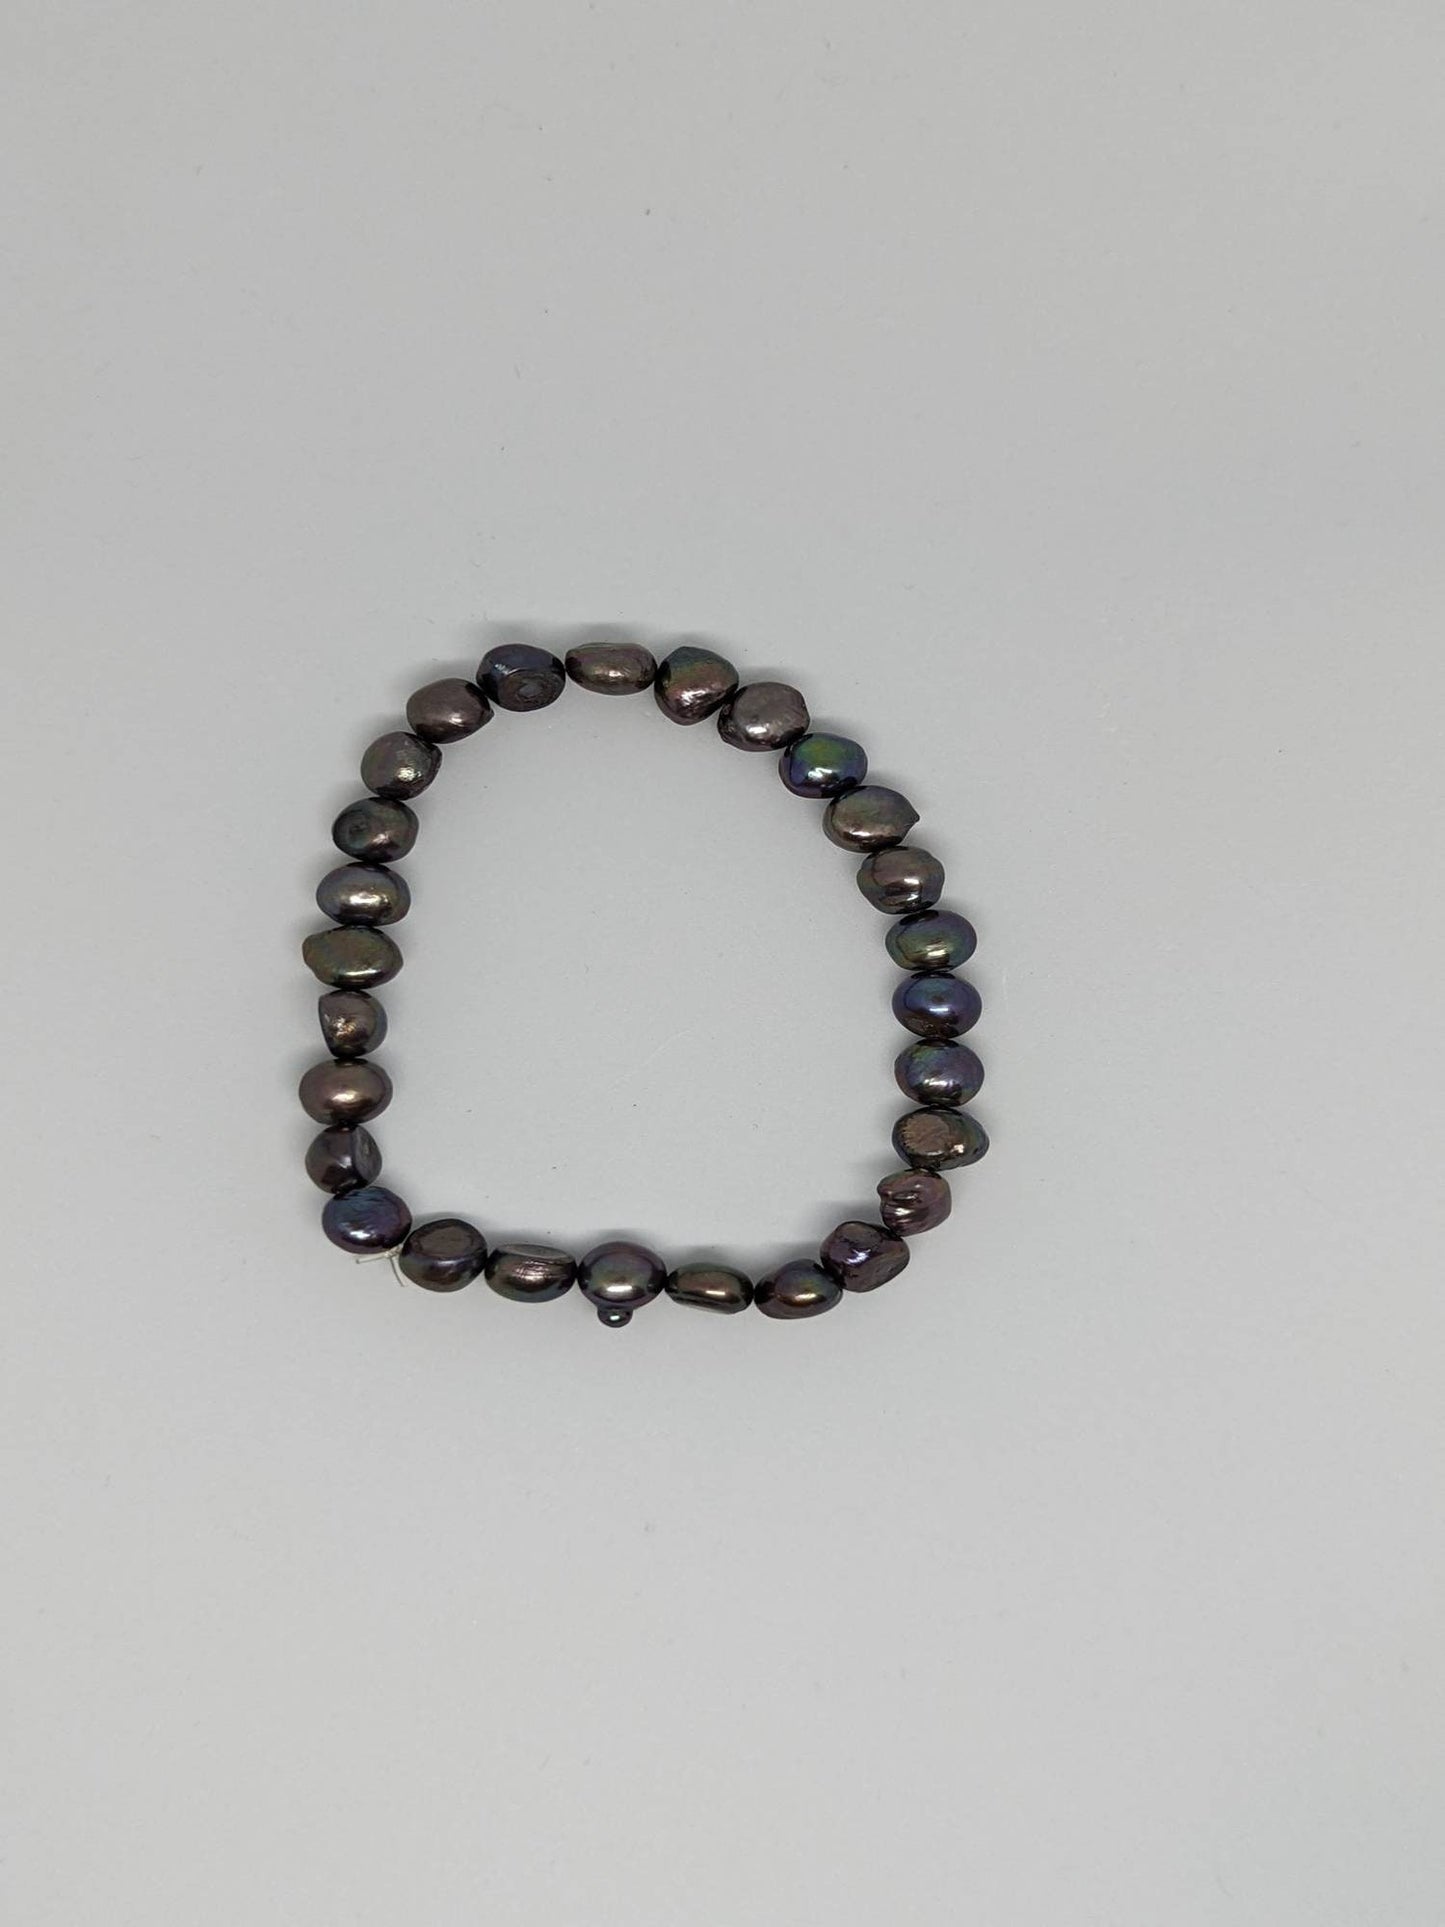 Peacock pearls, freshwater pearls, peacock earrings, dainty bracelet, freshwater bracelet